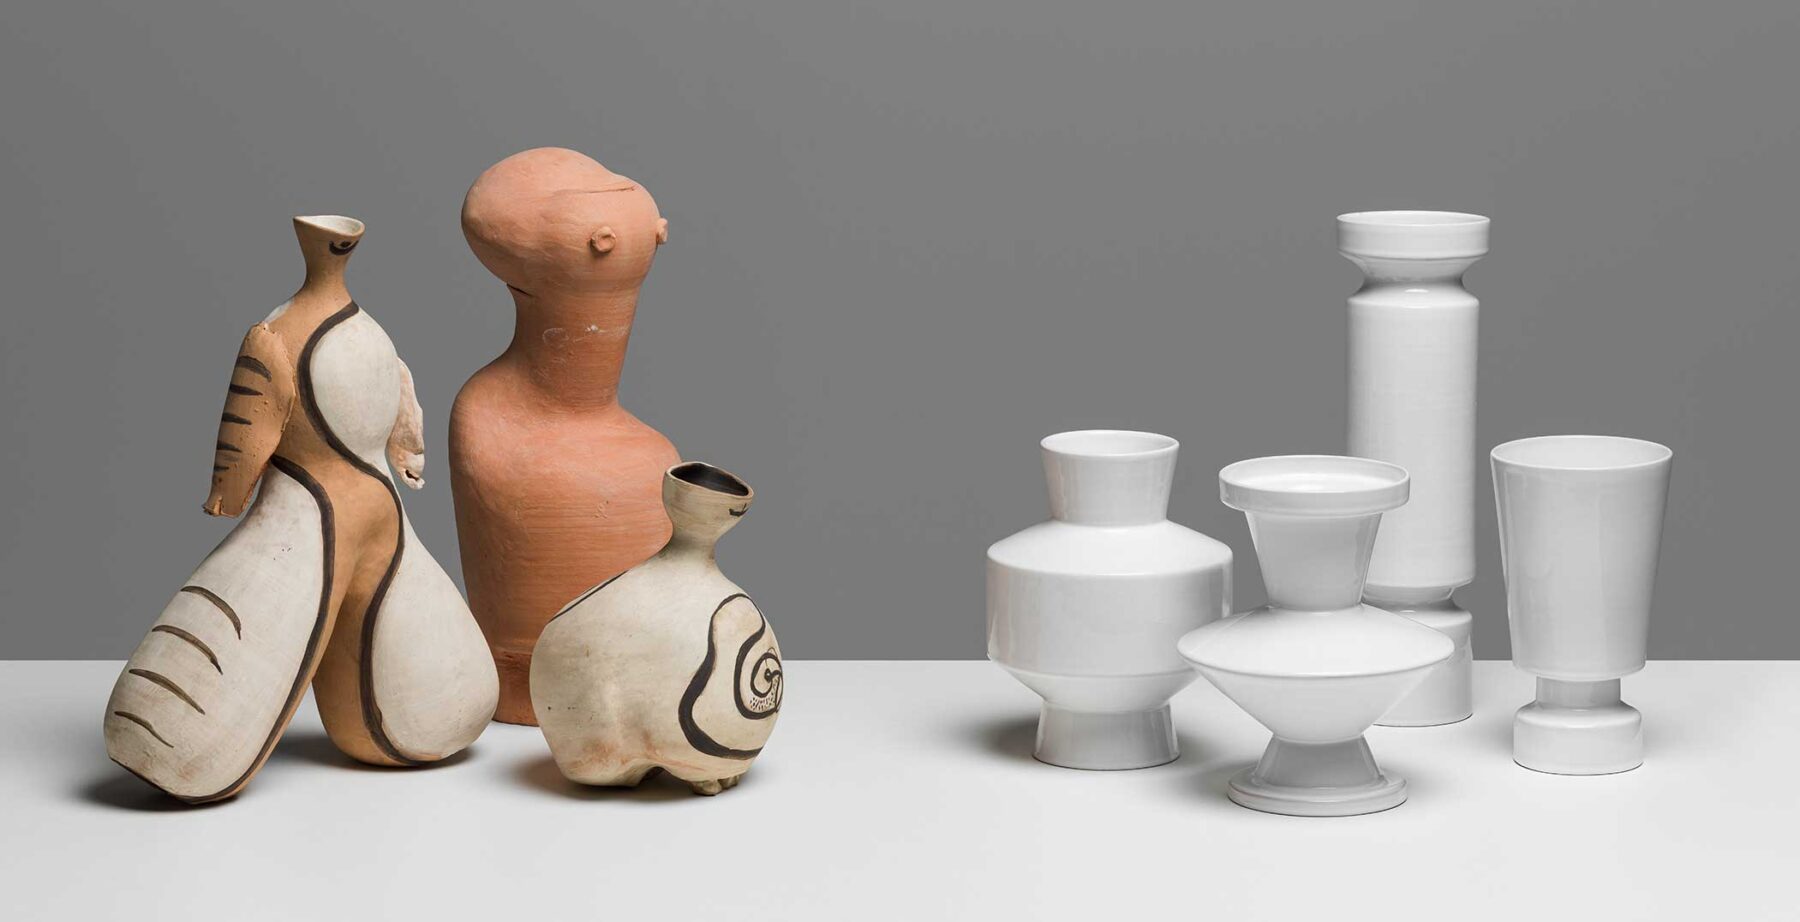 "Margrit Linck, Pionierin der Keramik" Museum für Gestaltung Zürich